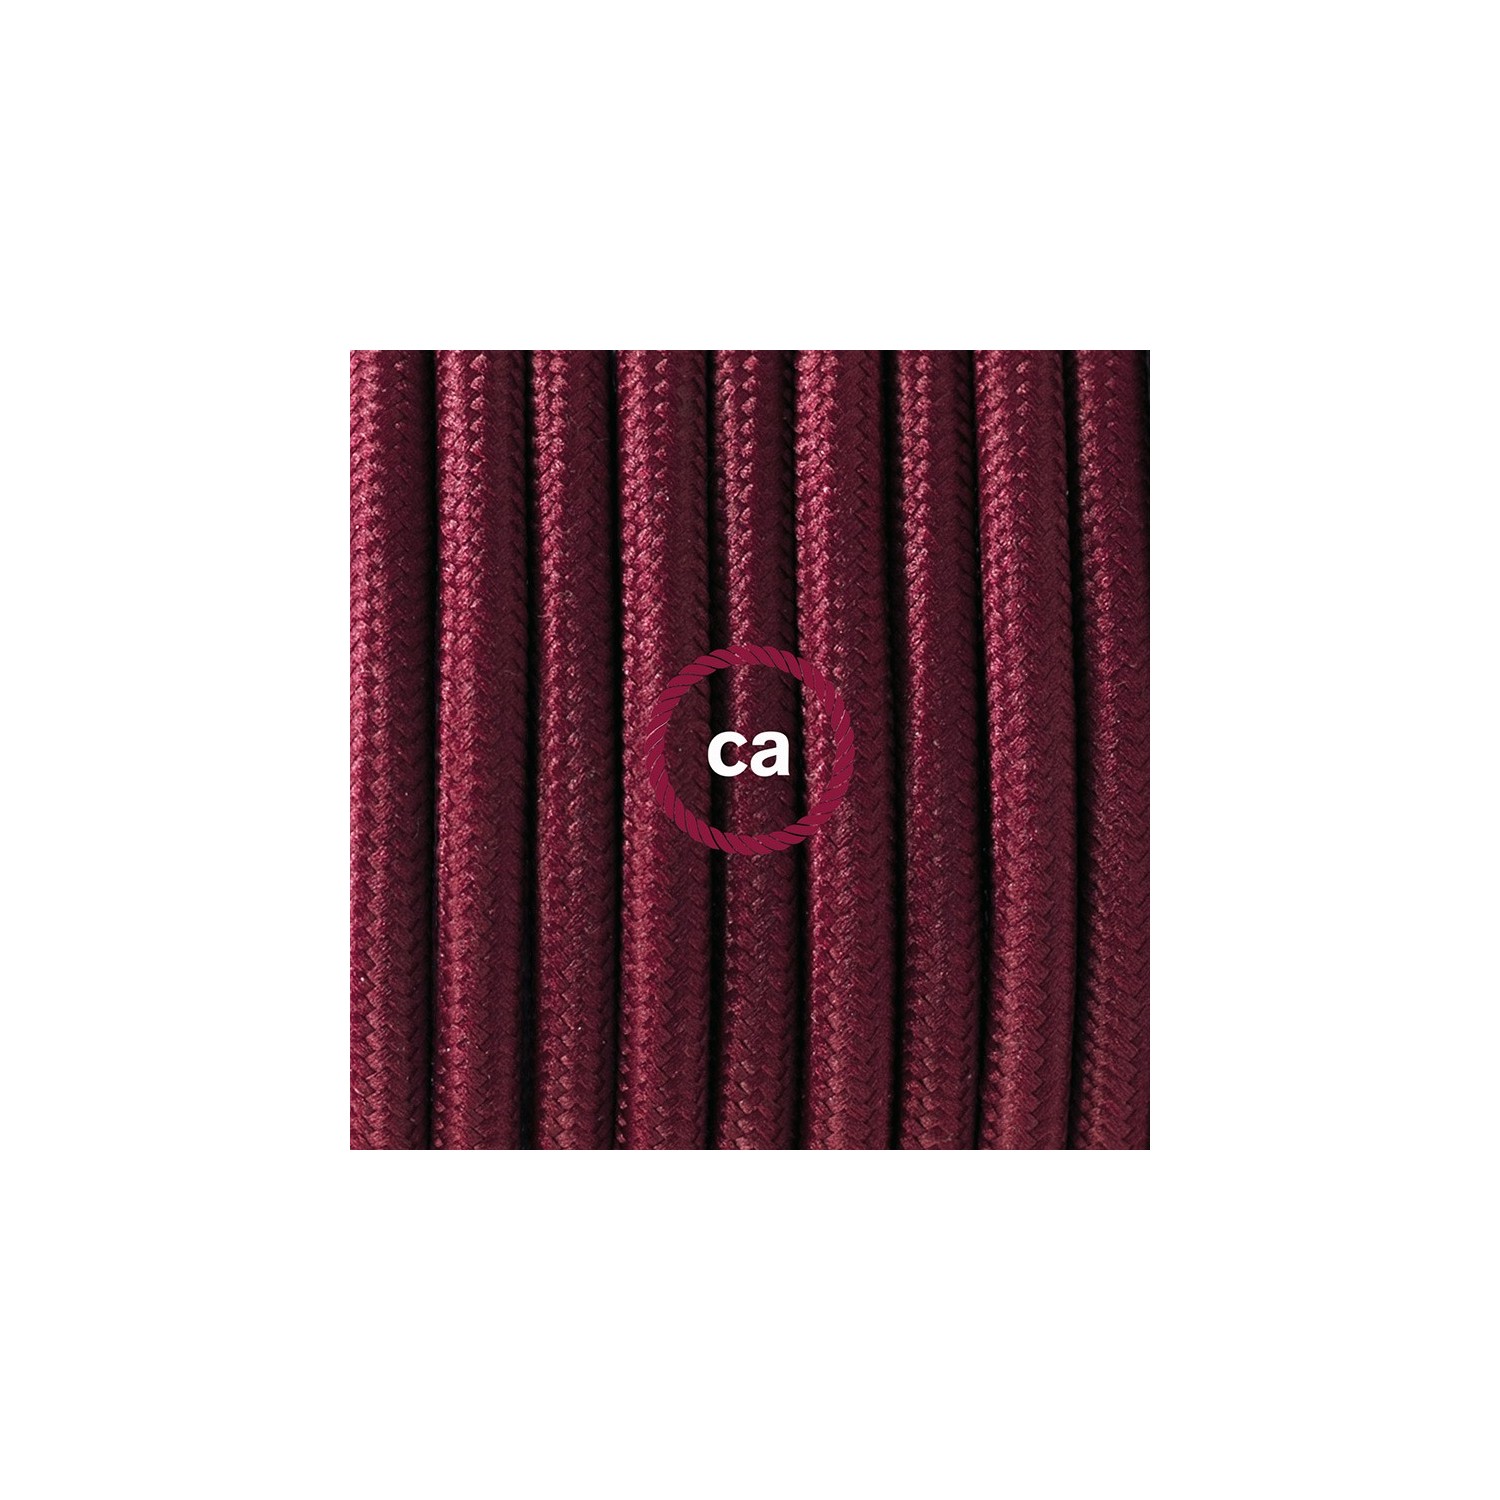 Zuleitung für Tischleuchten RM19 Bordeaux Seideneffekt 1,80 m. Wählen Sie aus drei Farben bei Schalter und Stecke.